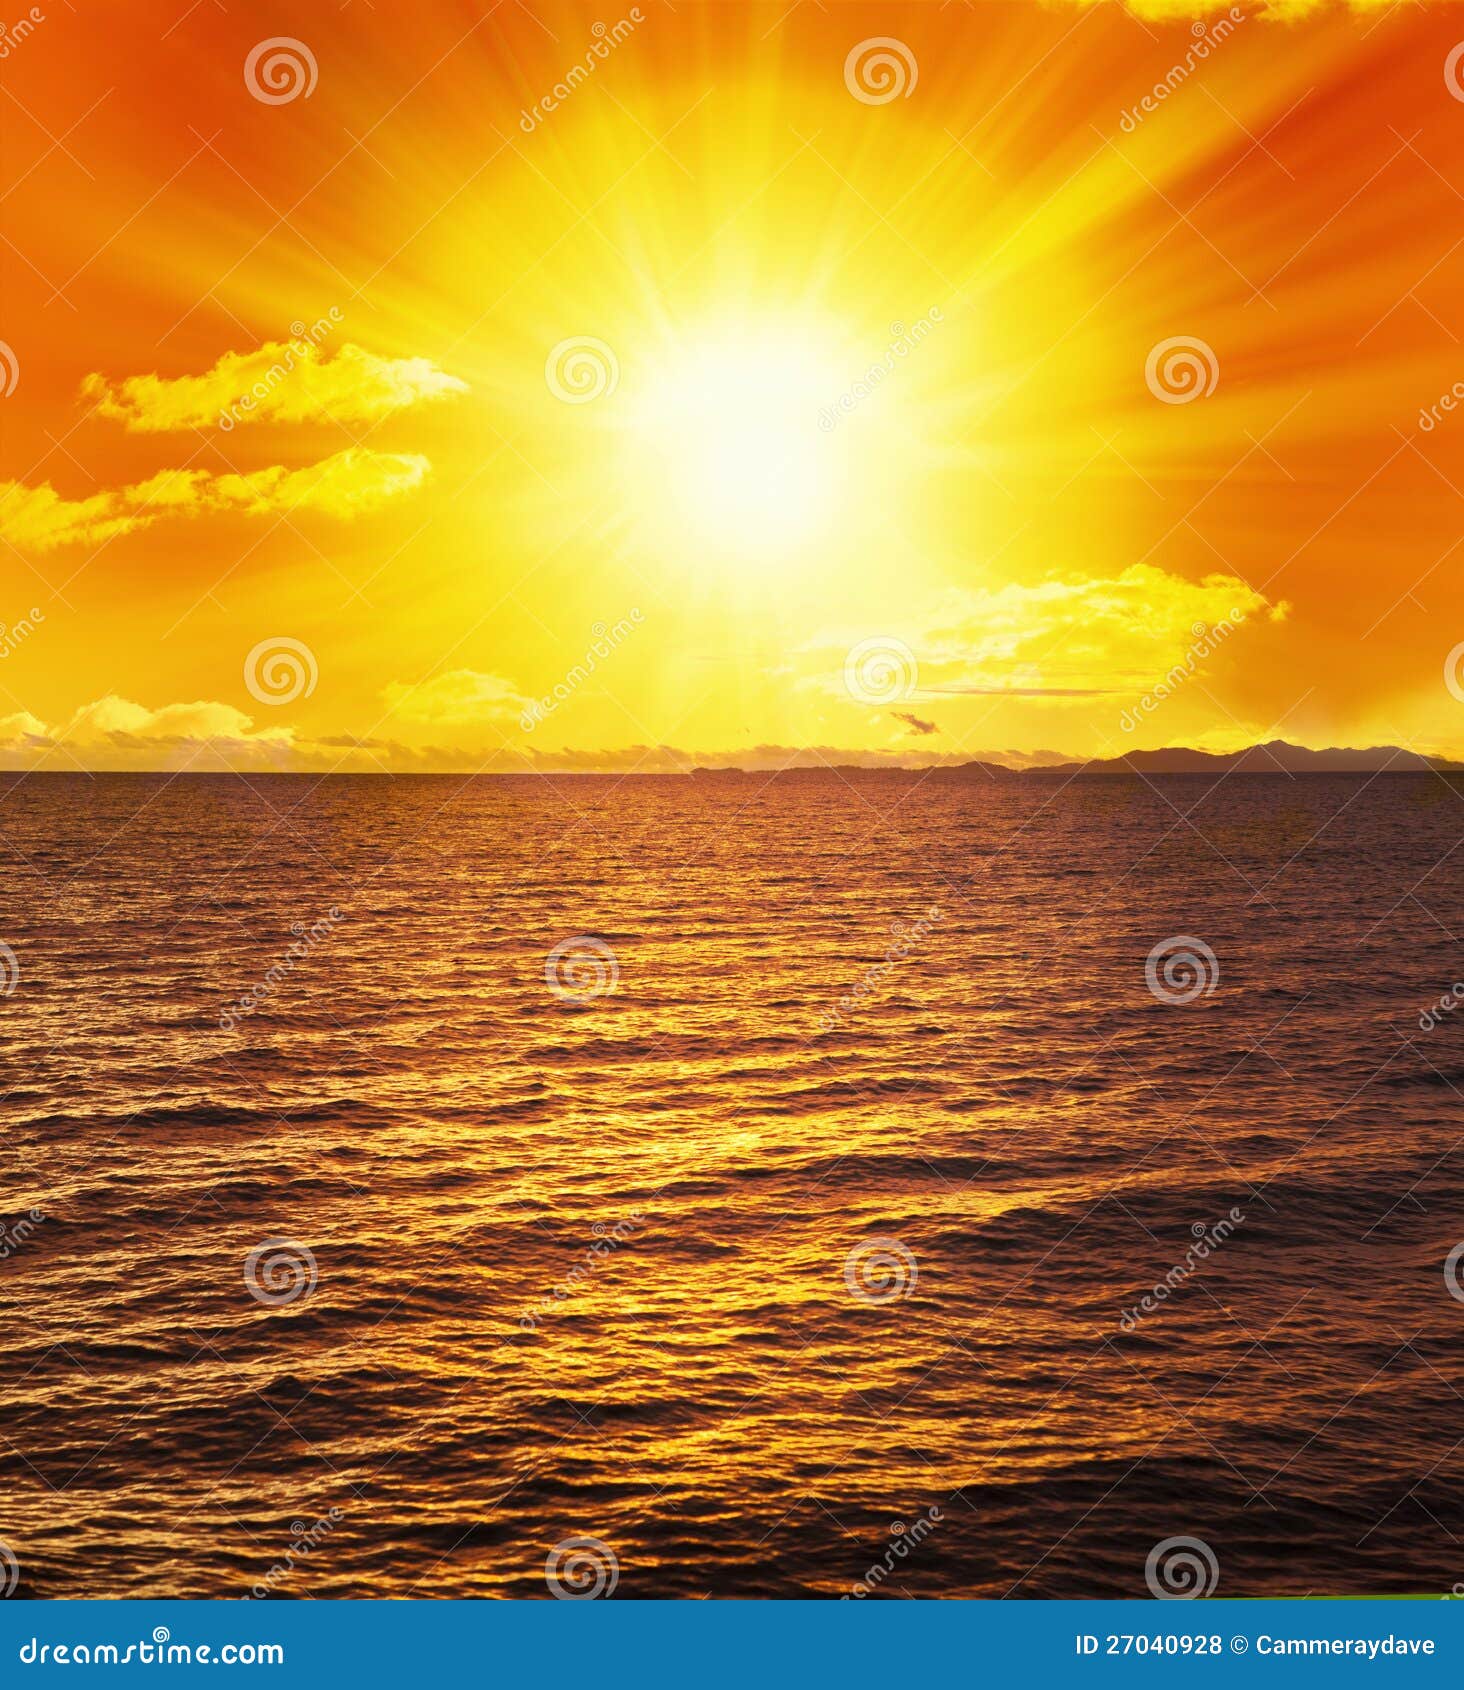 ocean sunset sun water waves